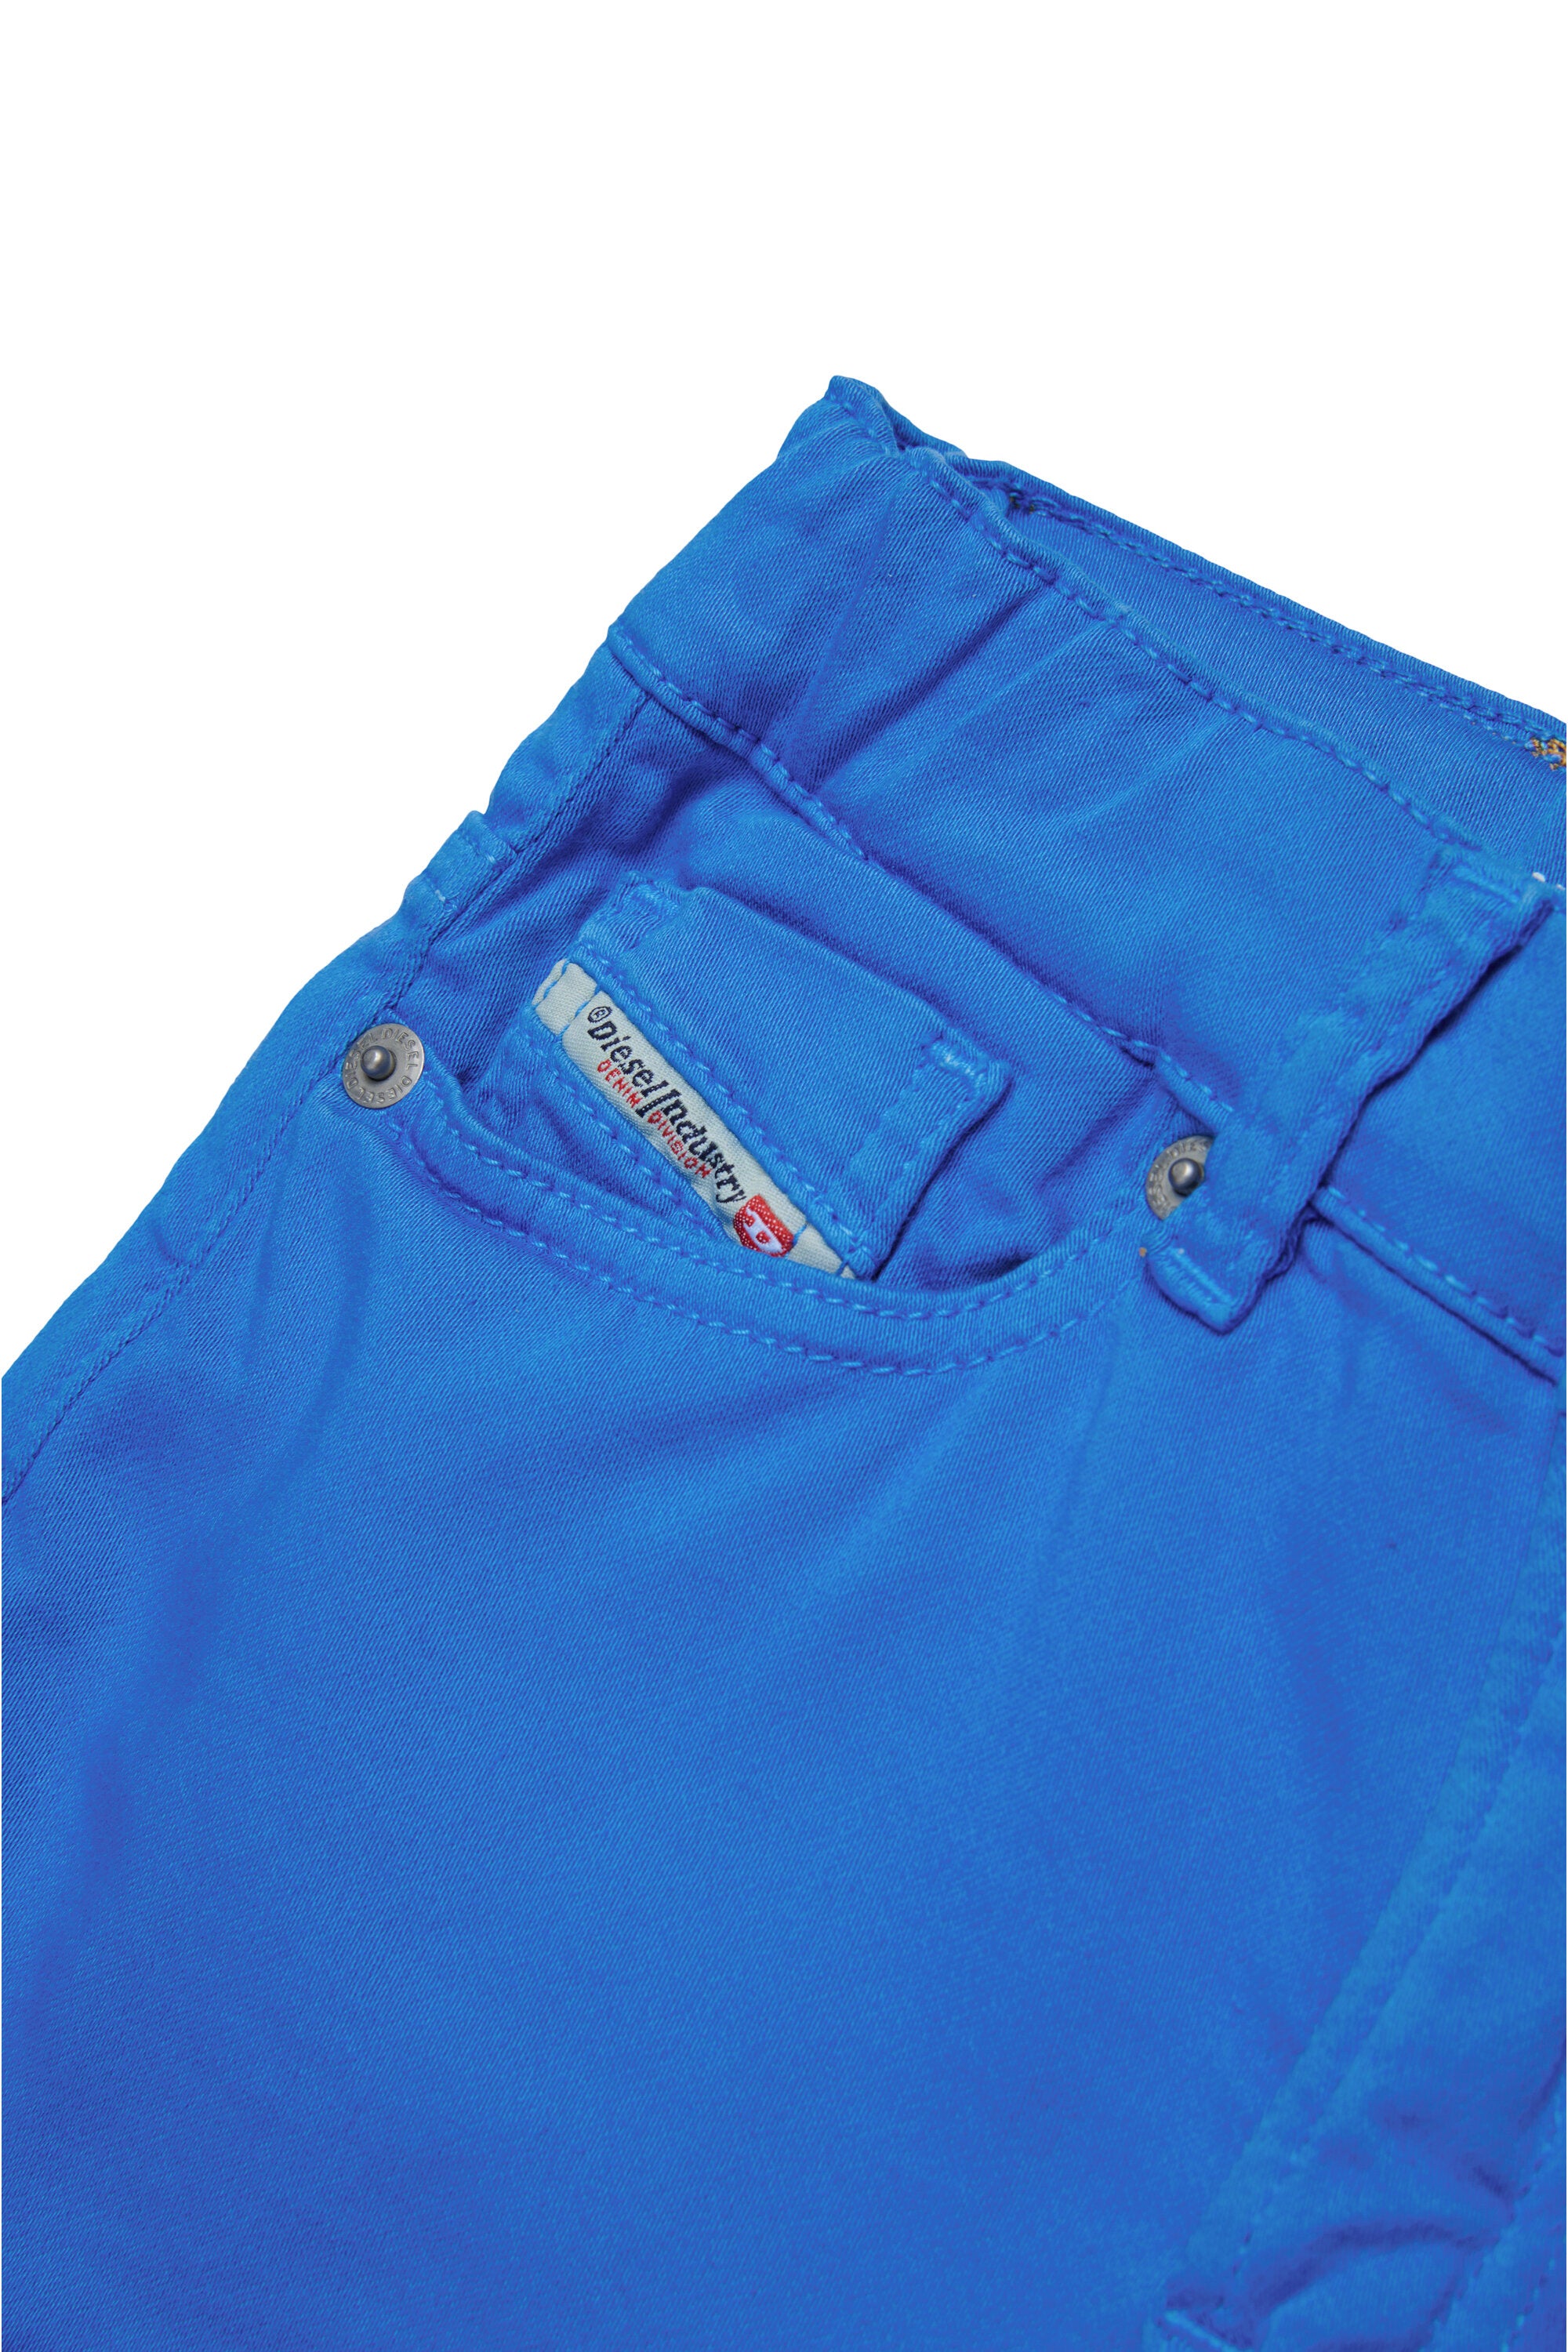 Pantalones cortos JoggJeans® de colores